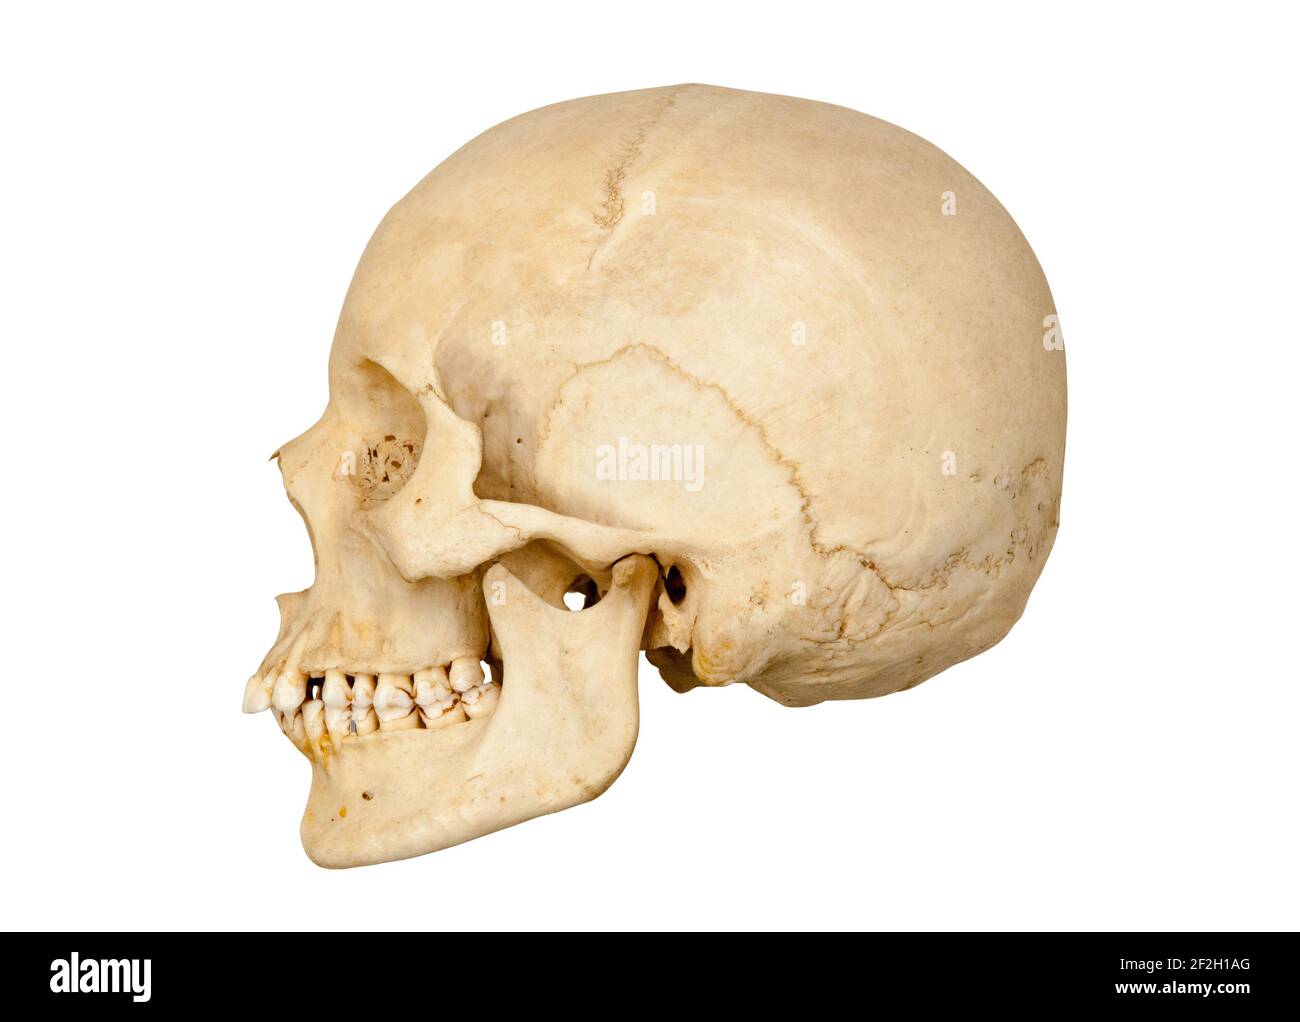 Vue latérale ou en profil du côté gauche d'un crâne humain découpée sur un fond blanc. Banque D'Images